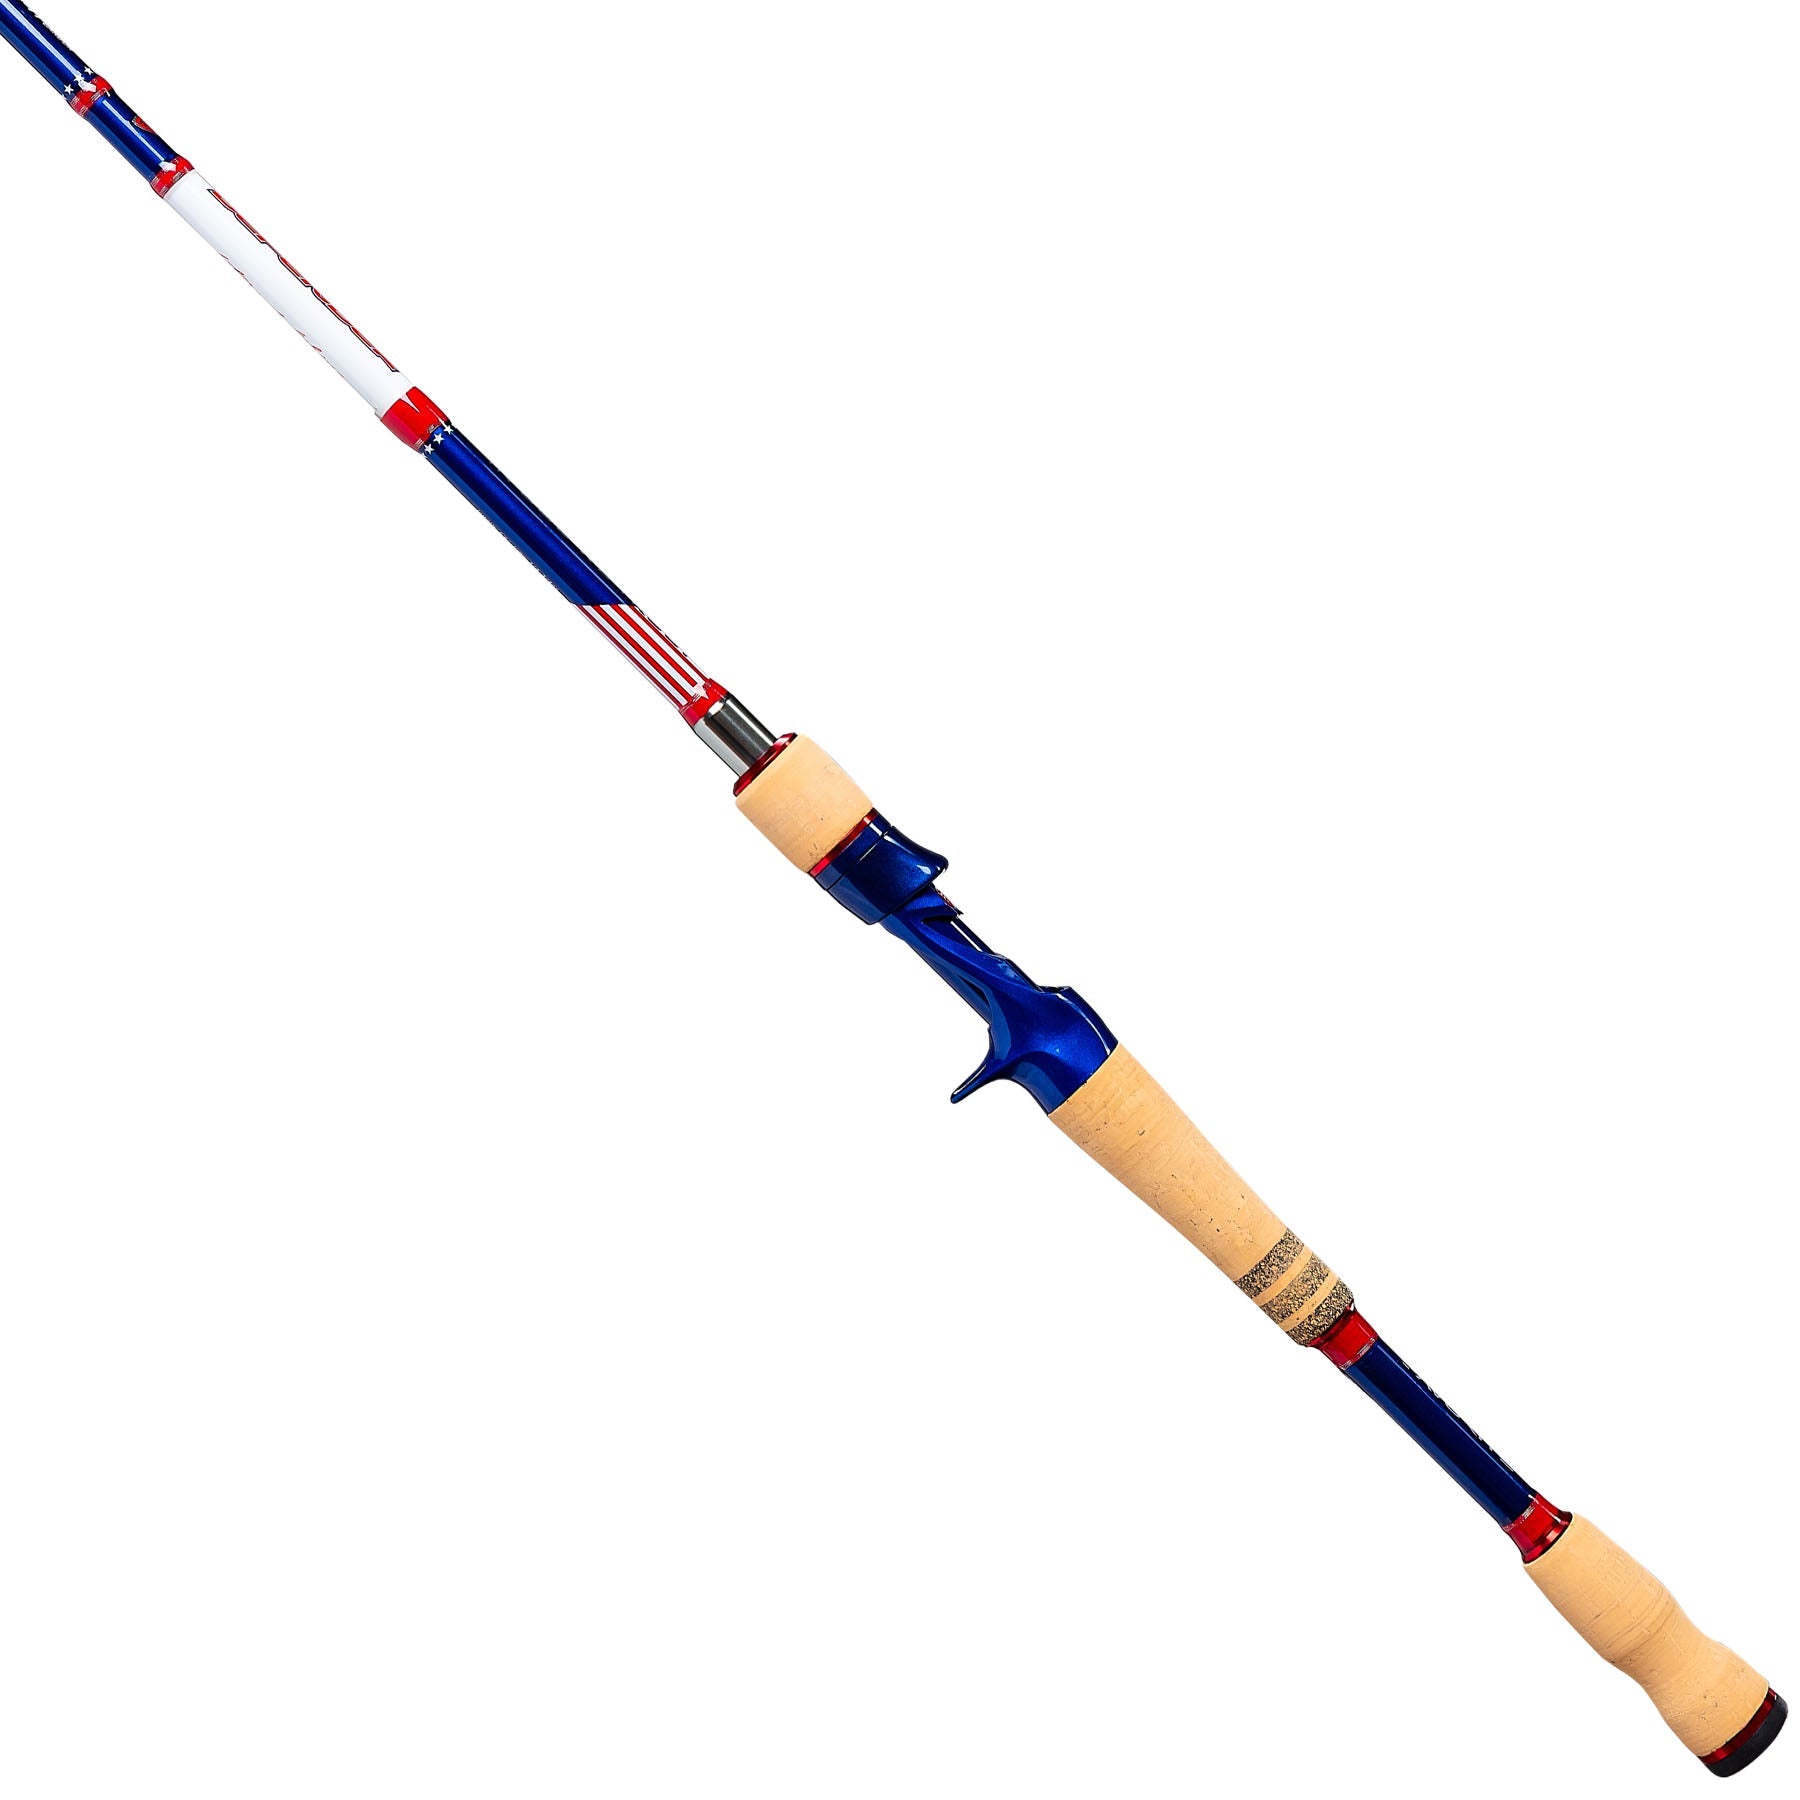 Championship Catfish Rod: 2 Piece Casting, Medium  